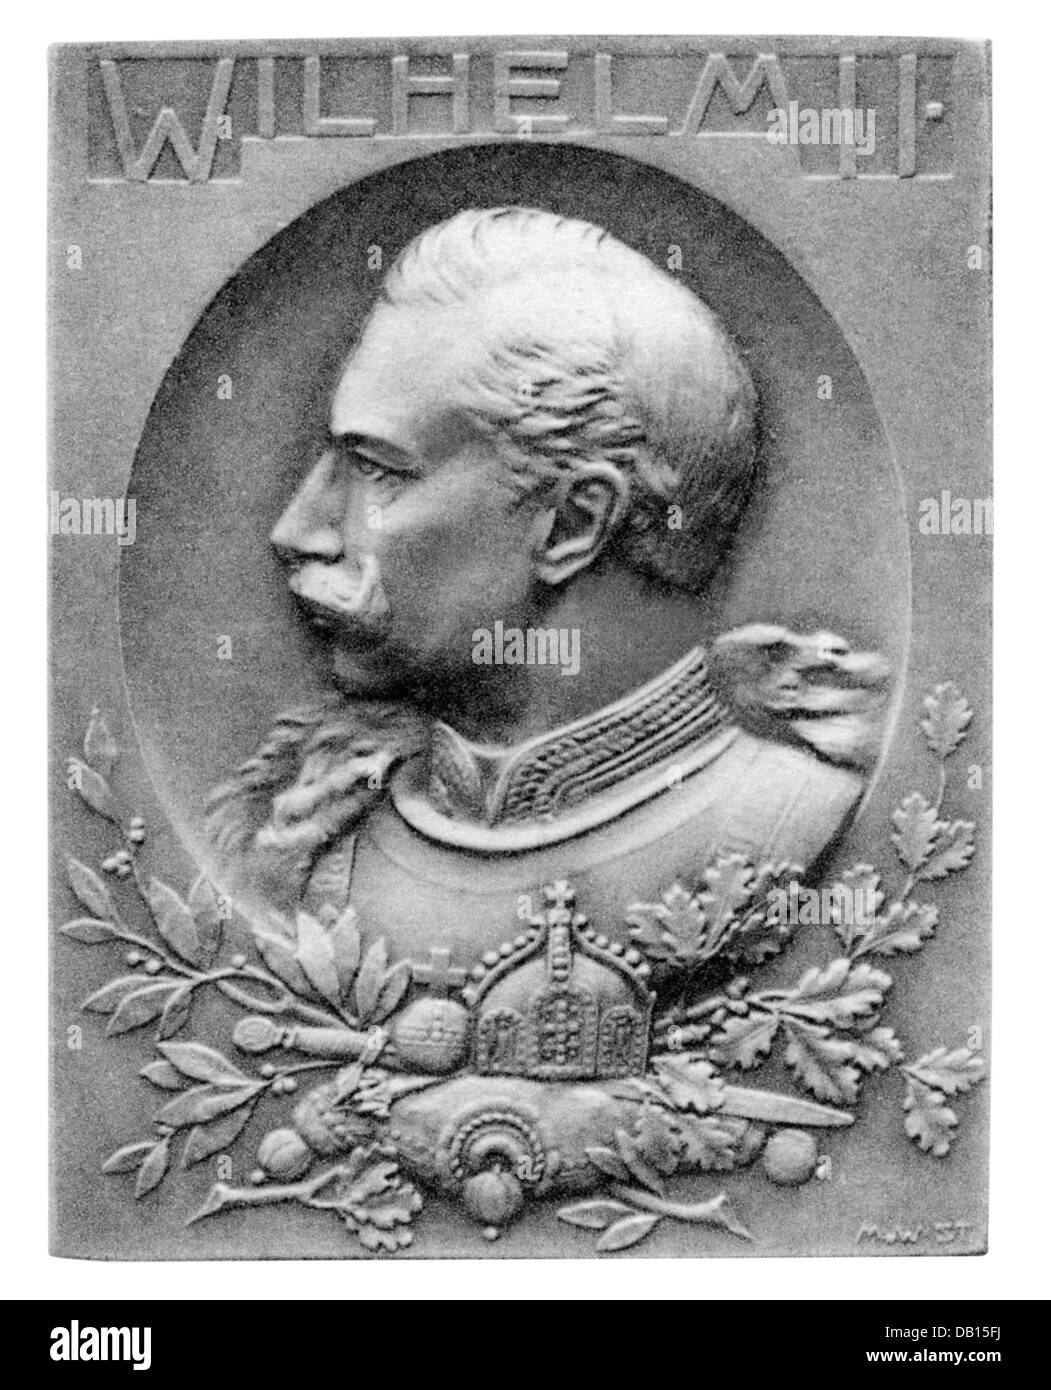 Wilhelm II, 27.1.1859 - 4.6.1941, German emperor 15.6.1888 - 9.11.1918, portrait, badge, bronze, 50,5 x 39 mm, Stuttgarter Metallwarenfabrik Mayer & Wilhelm, famous men series, Stuttgart, 1914, Stock Photo